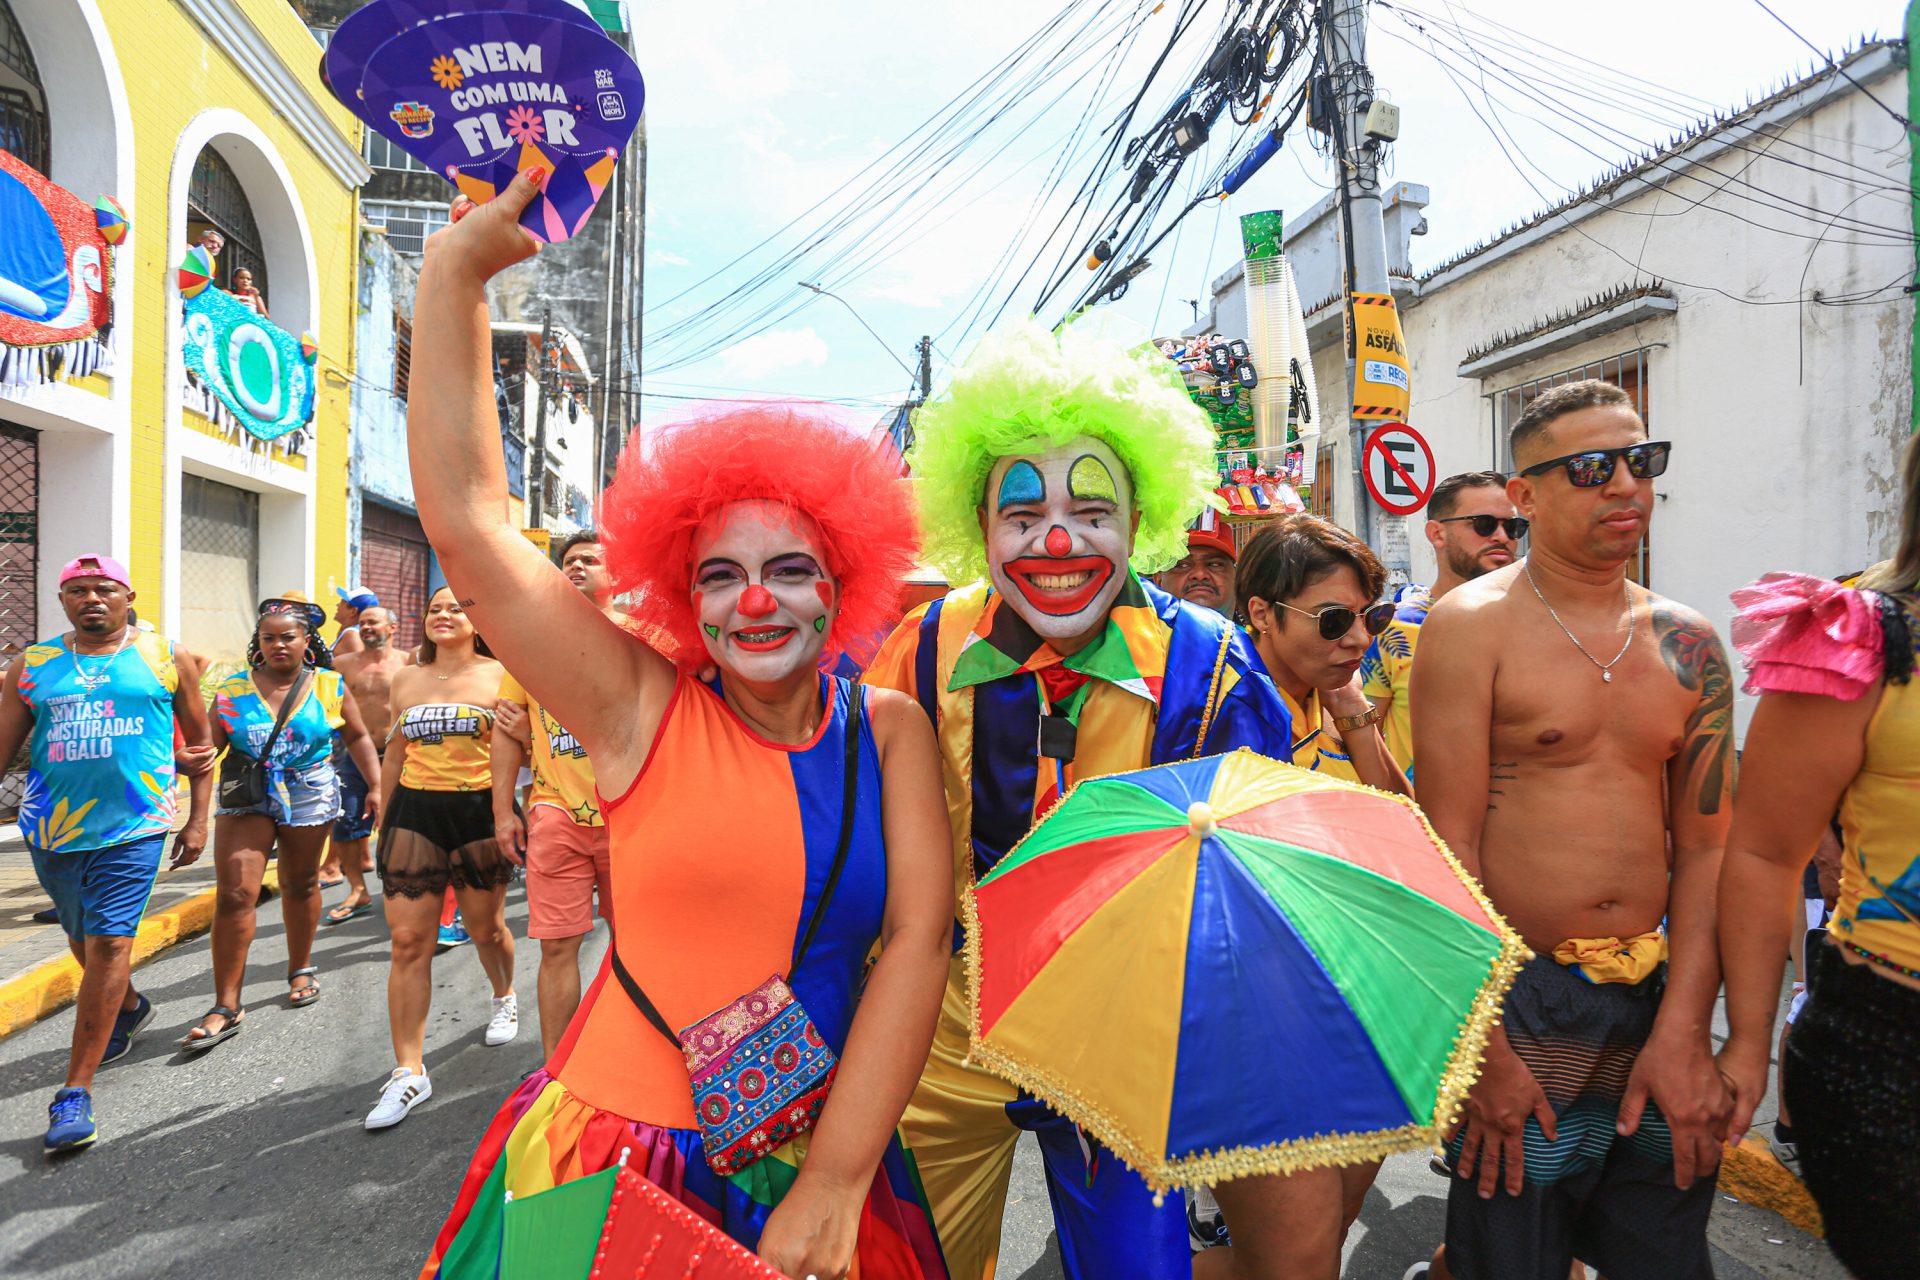 Movimentação do 44º desfile do Galo da Madrugada, o maior bloco de carnaval de rua do mundo, no centro do Recife (PE), na manhã deste sábado (18) - Foto: Rafael Melo/Myphoto/Estadão Conteúdo